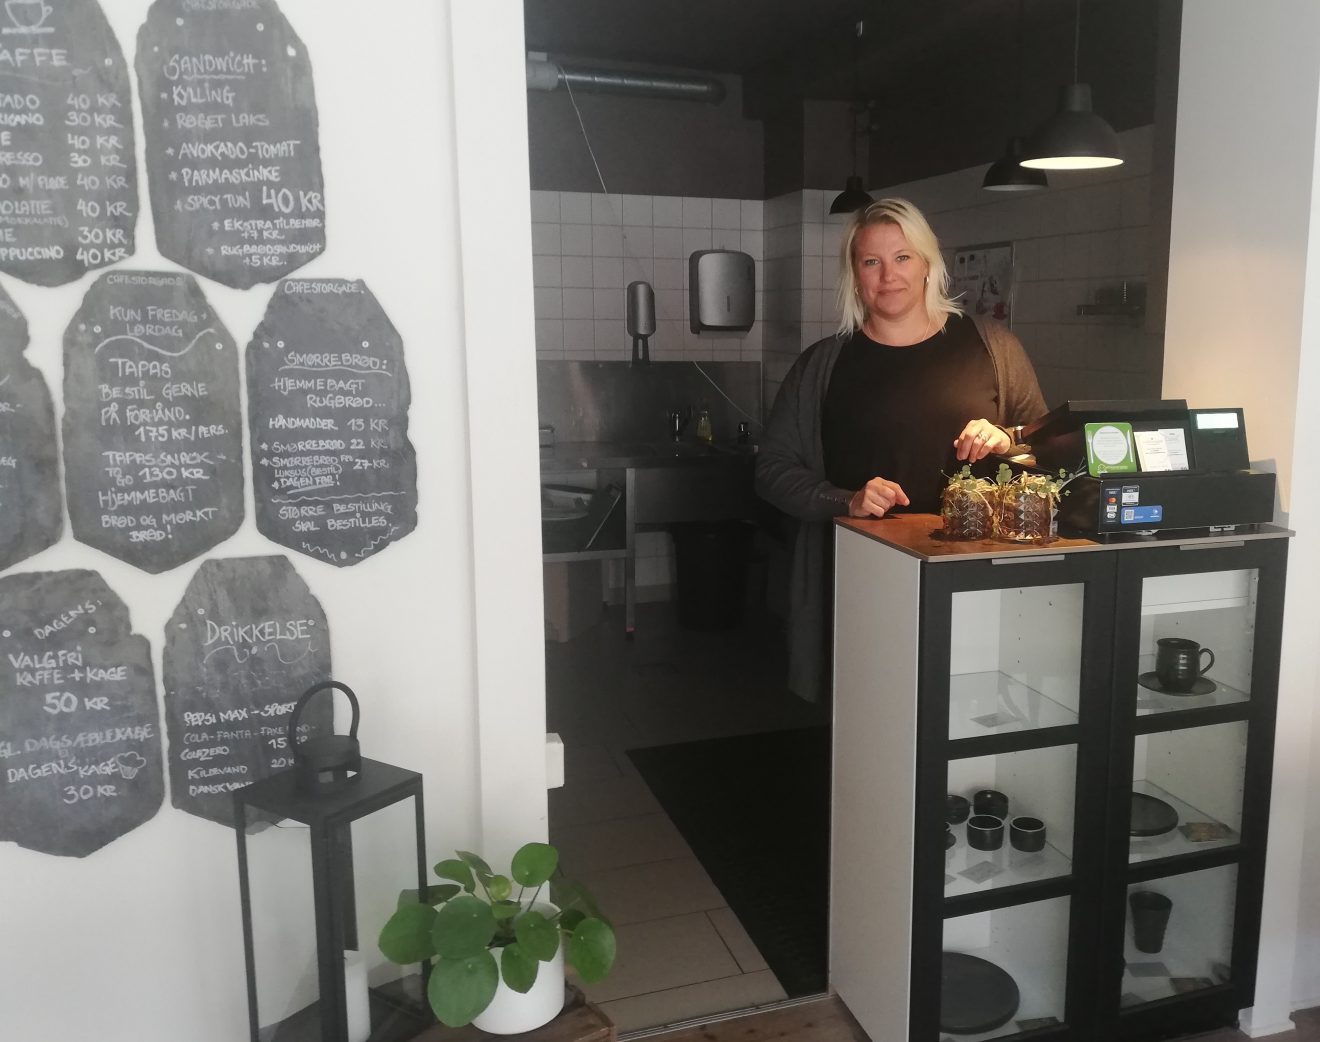 Café Storgade åbner igen